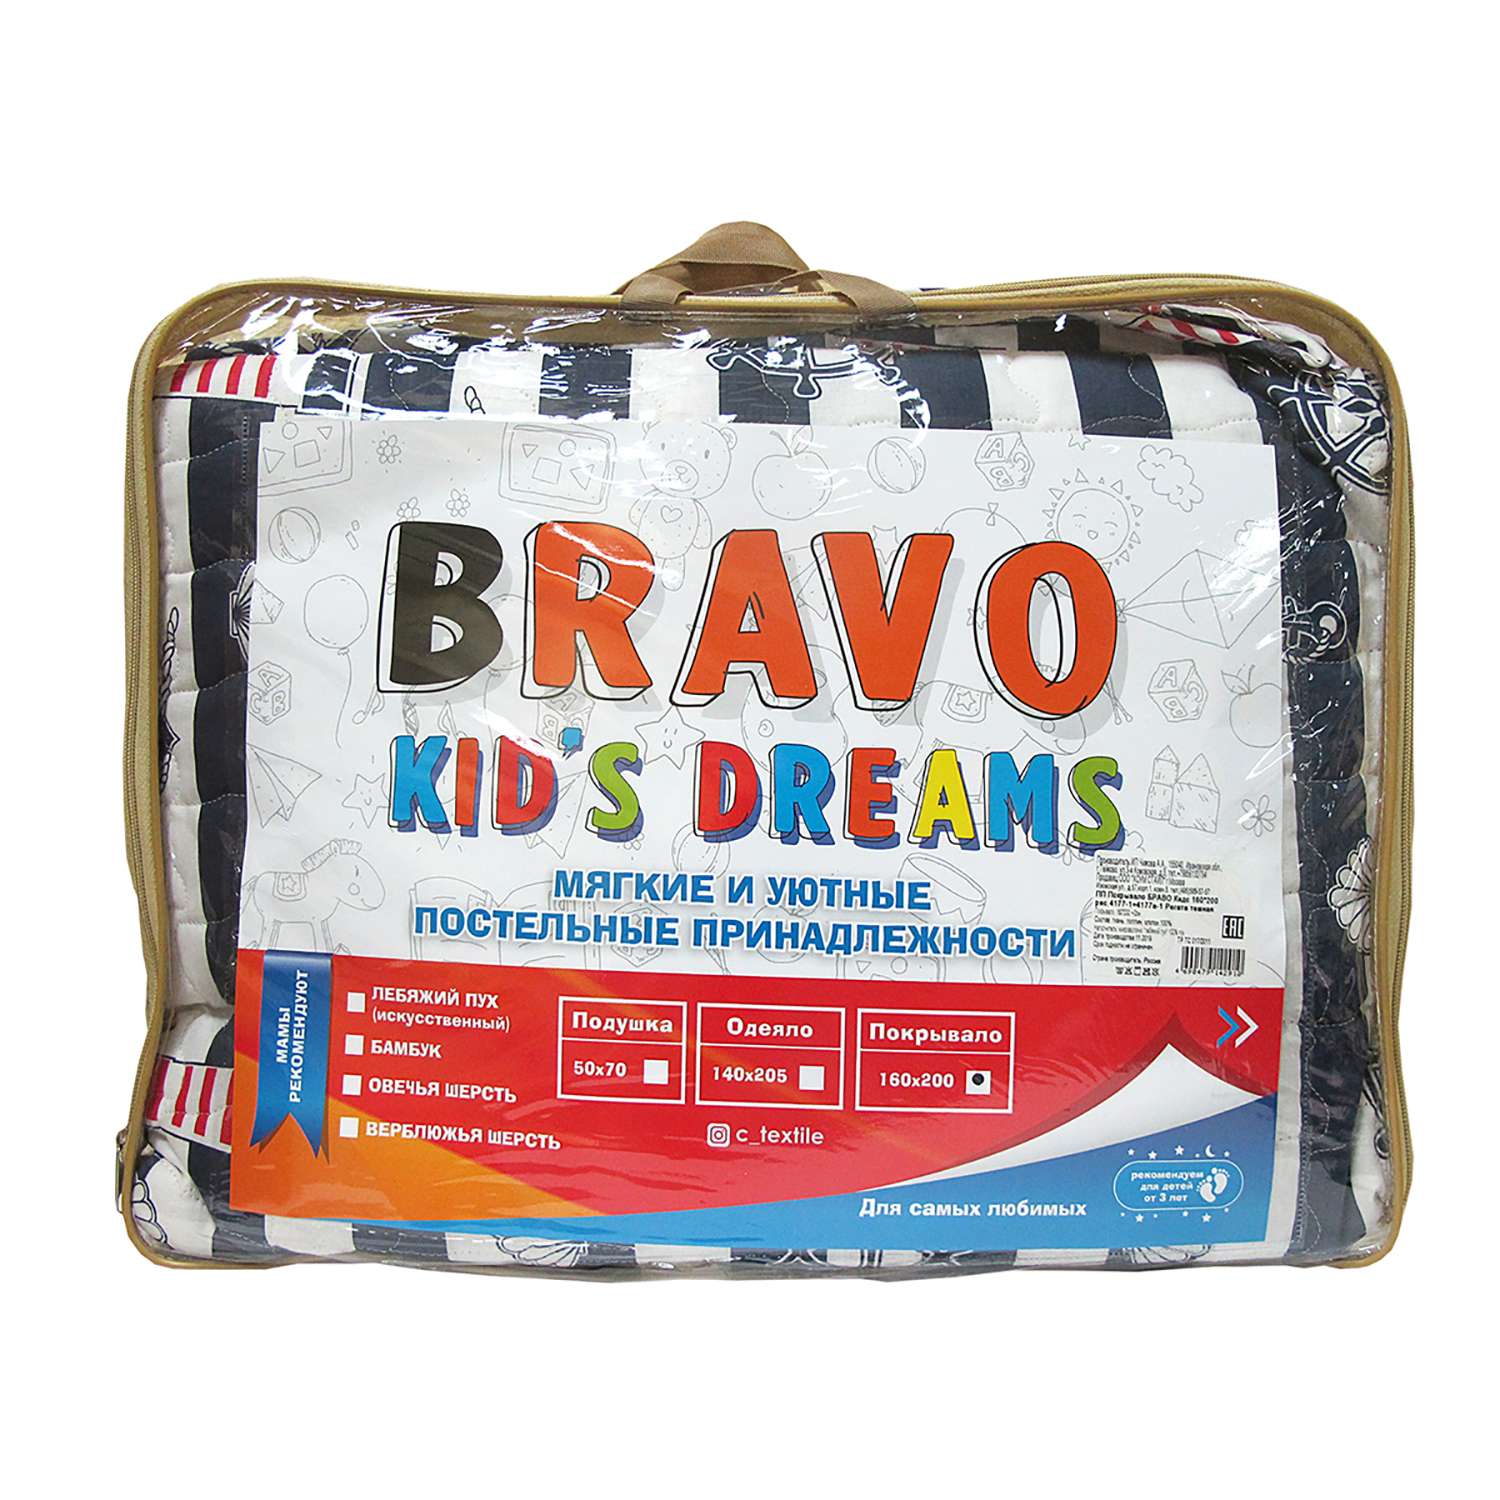 Покрывало BRAVO kids dreams Регата Темная 160х200 4177-1-4177а-1 - фото 3